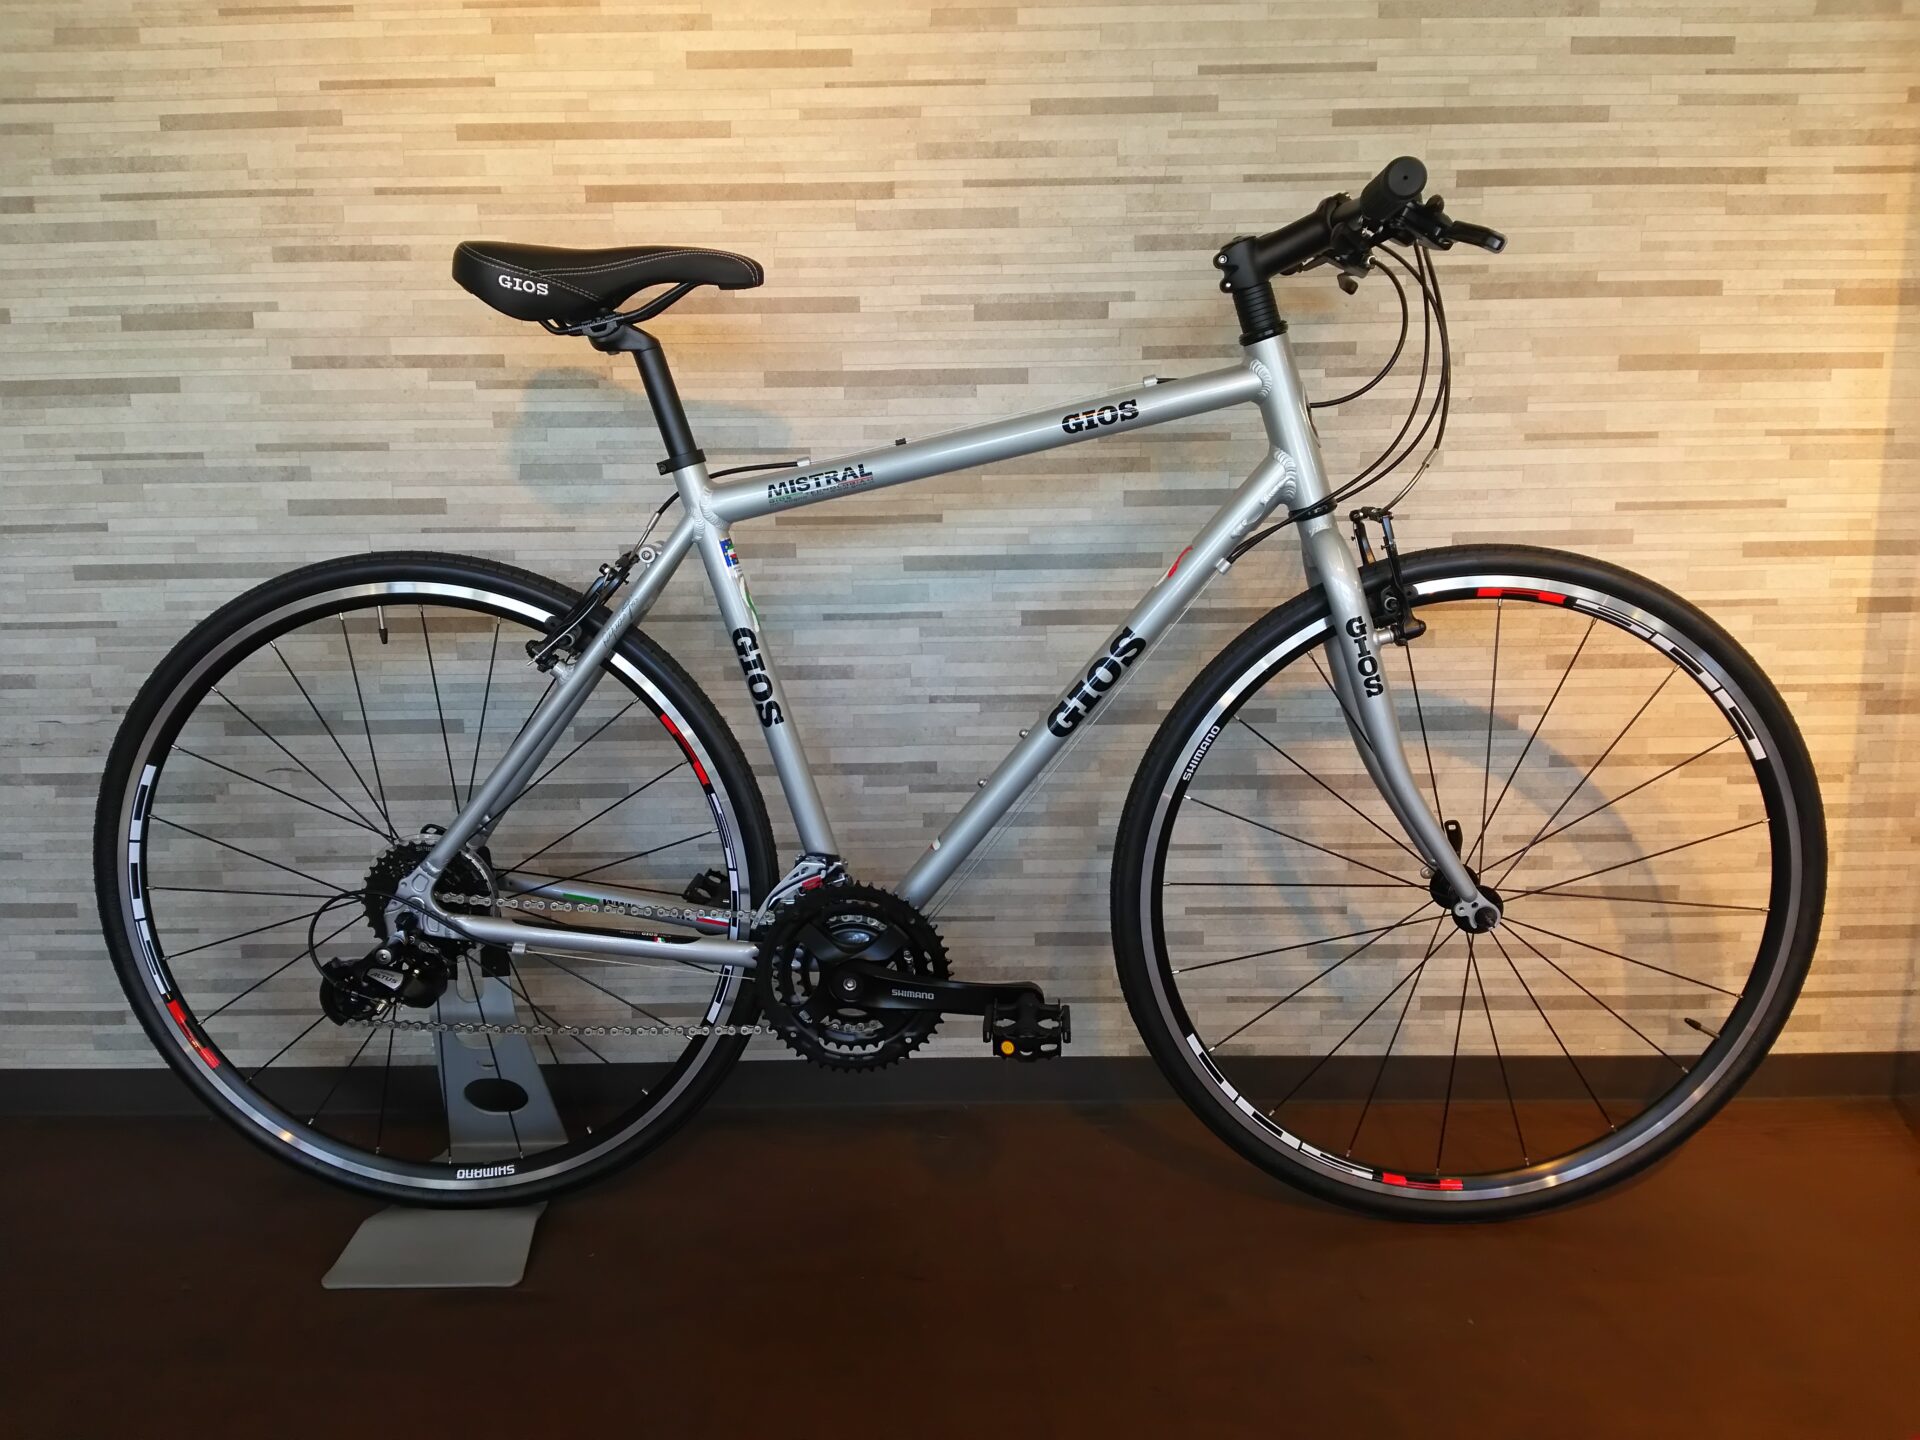 GIOS（ジオス）MISTRAL（ミストラル）限定モデル在庫あります！ | 京都の中古自転車・新車販売 サイクルショップ エイリン